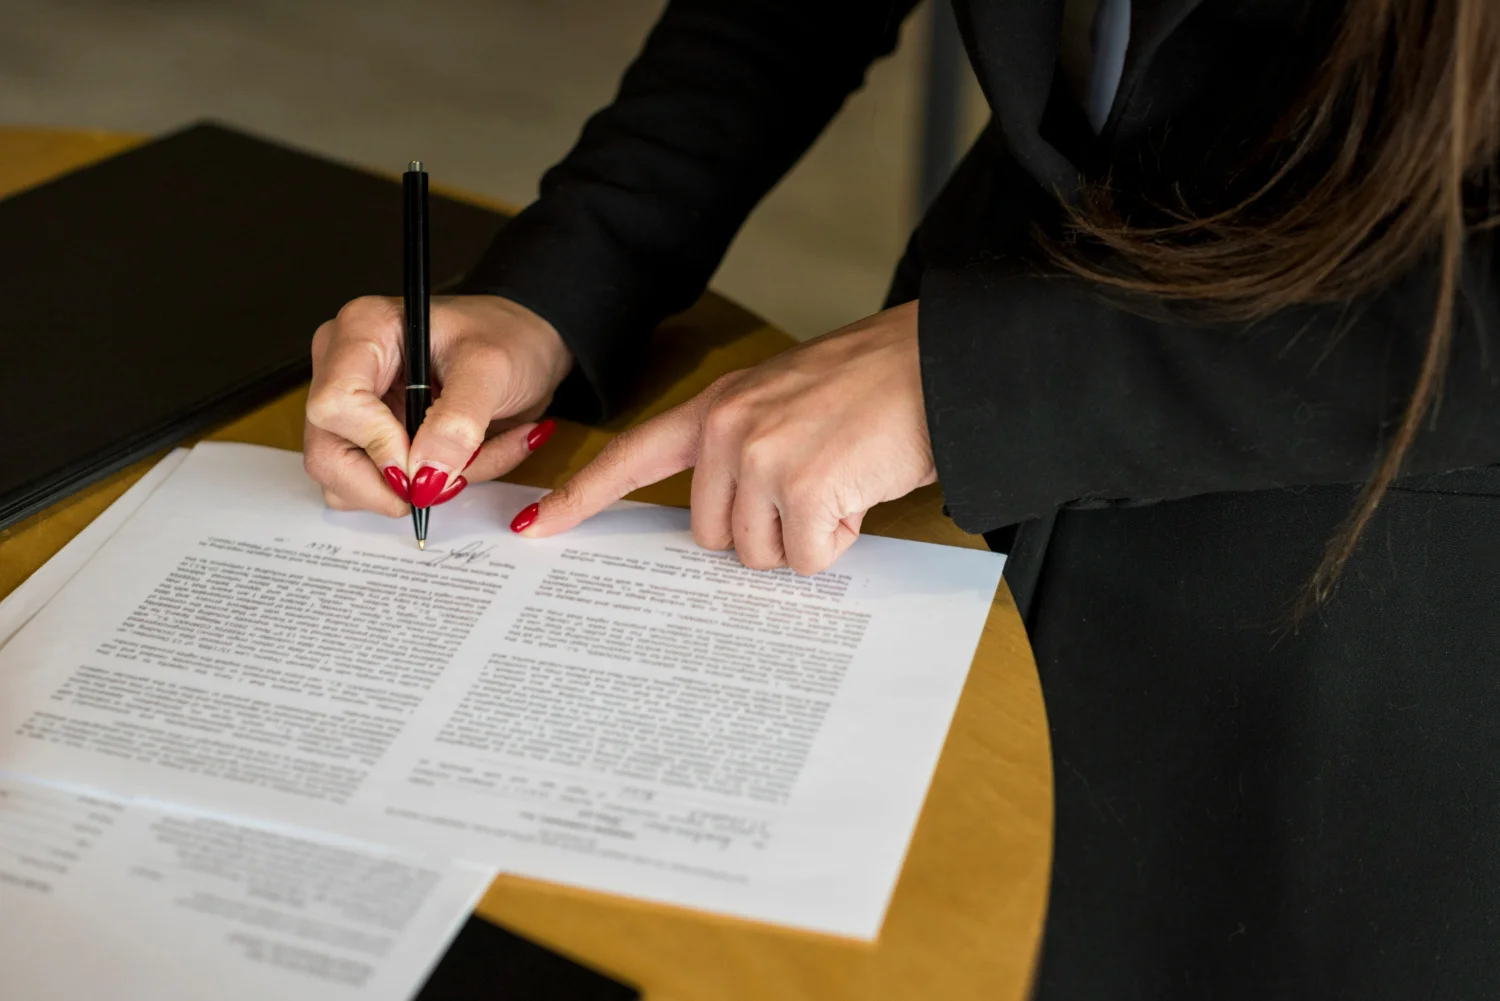 Traduzir documento de testamento: como funciona e onde fazer